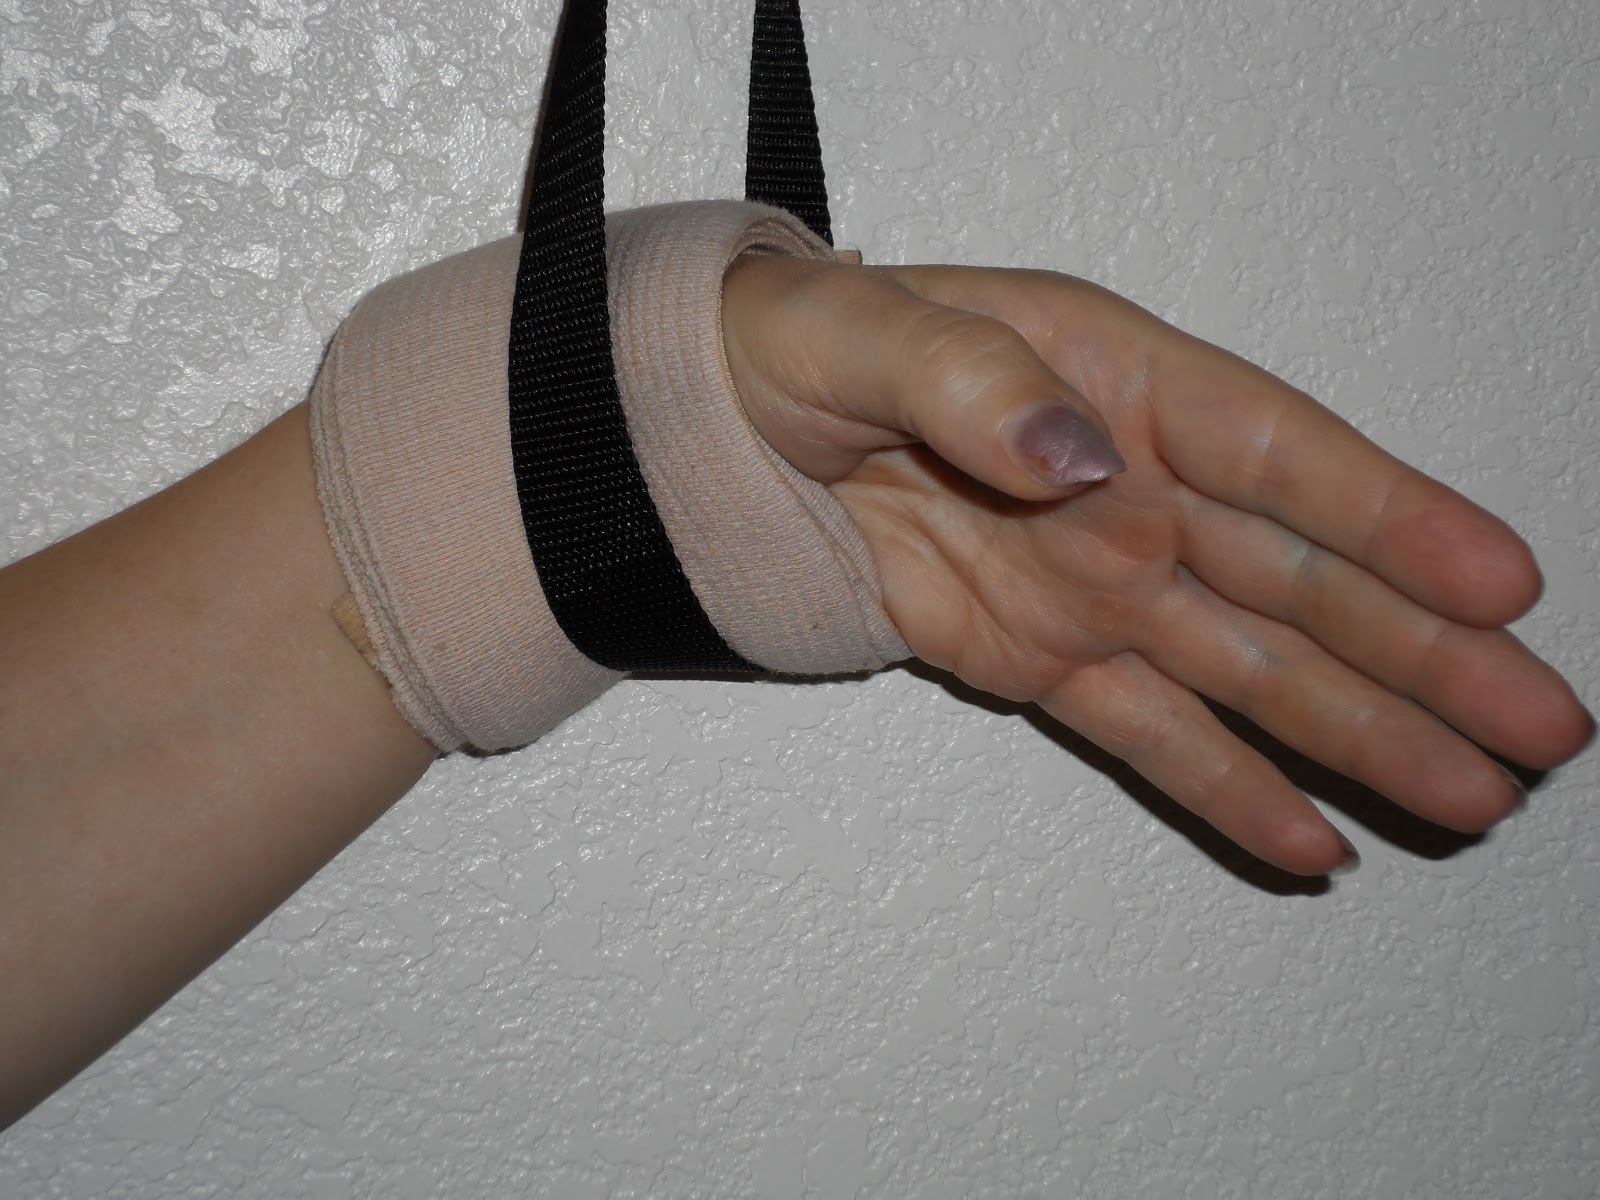 ace bandage on wrist